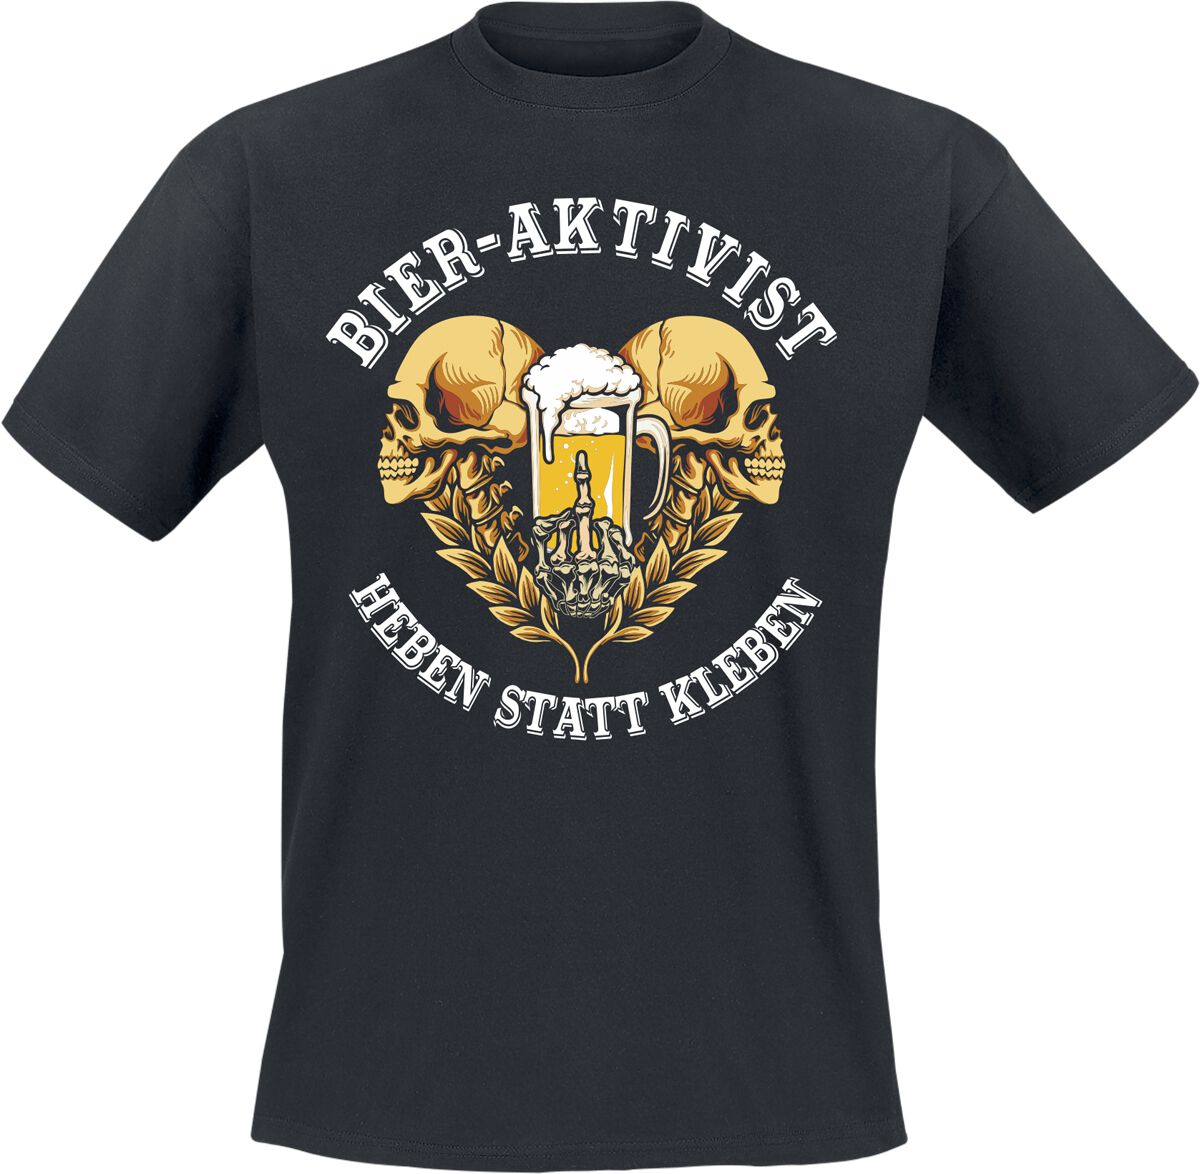 Alkohol & Party T-Shirt - Bier-Aktivist - Heben statt kleben - M bis L - für Männer - Größe M - schwarz